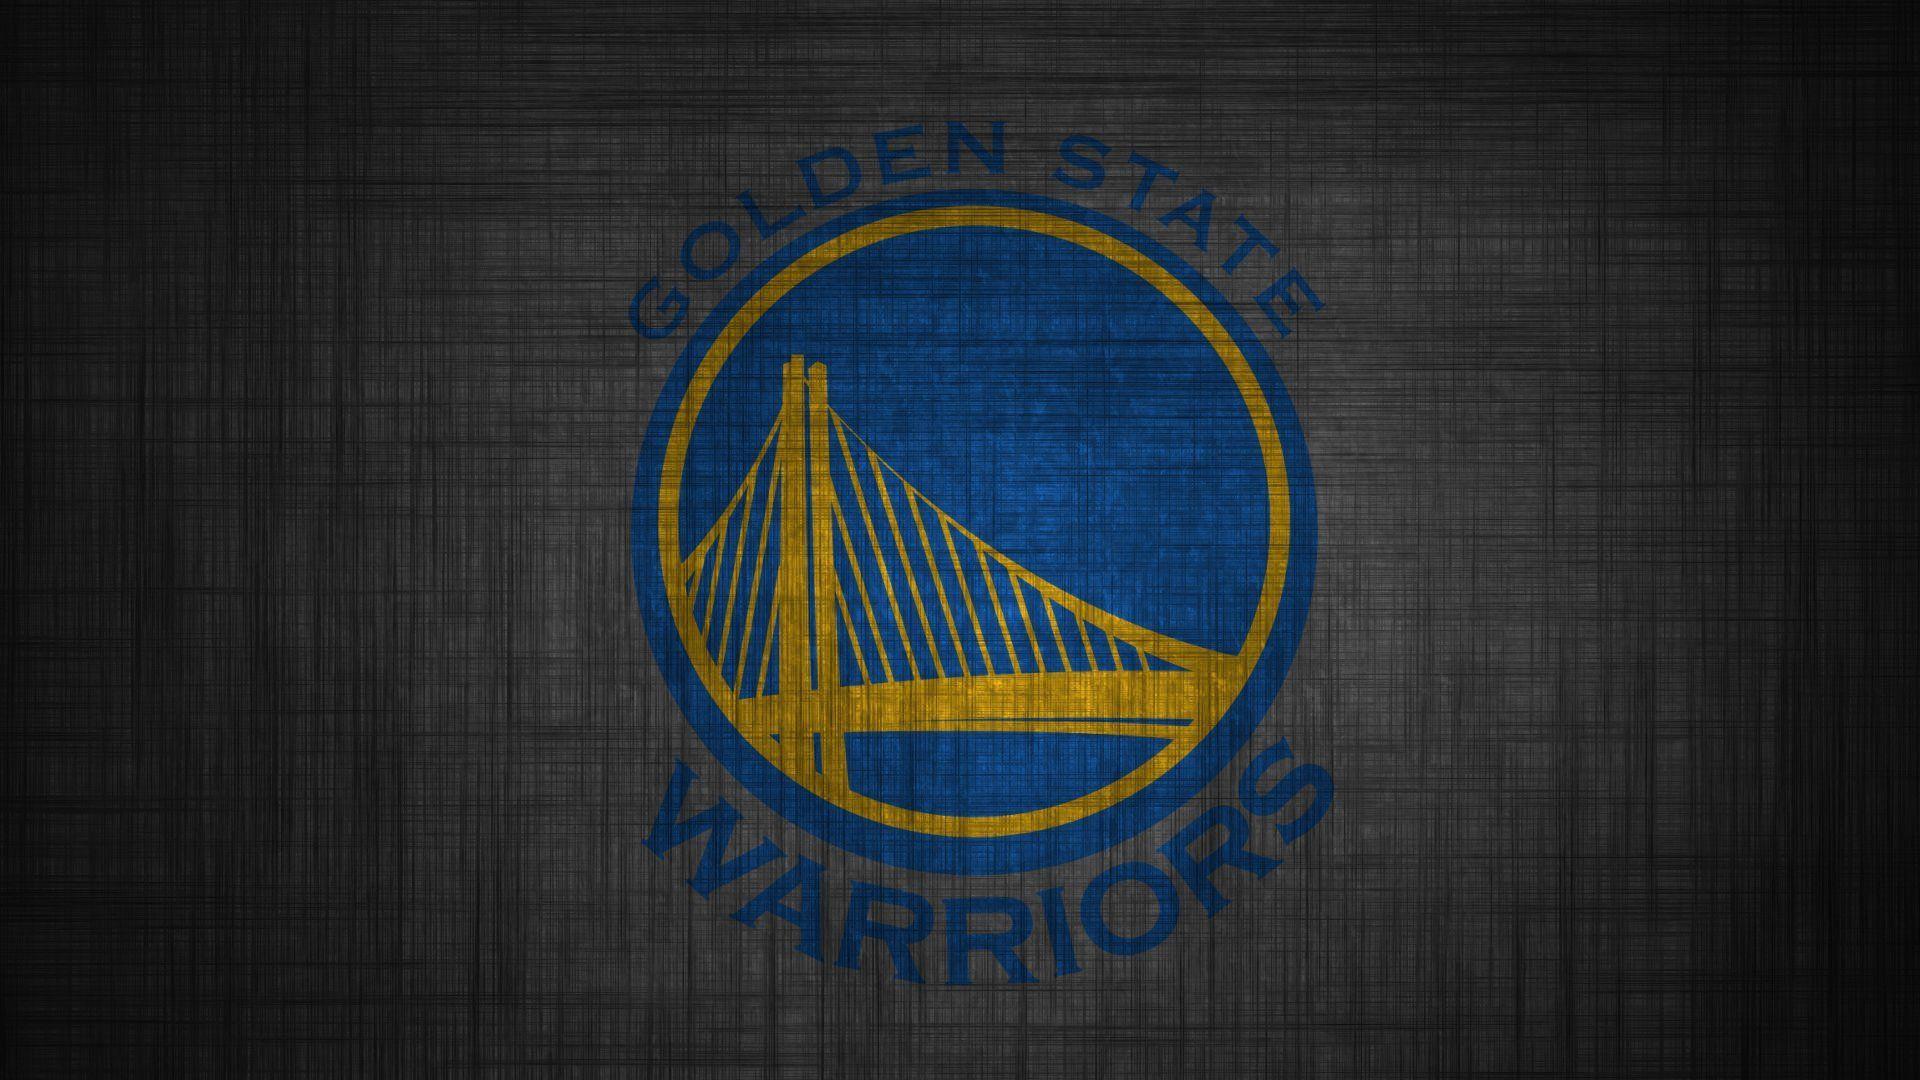 Golden State Warriors The Town desktop wallpaper 1440x900 : r/warriors